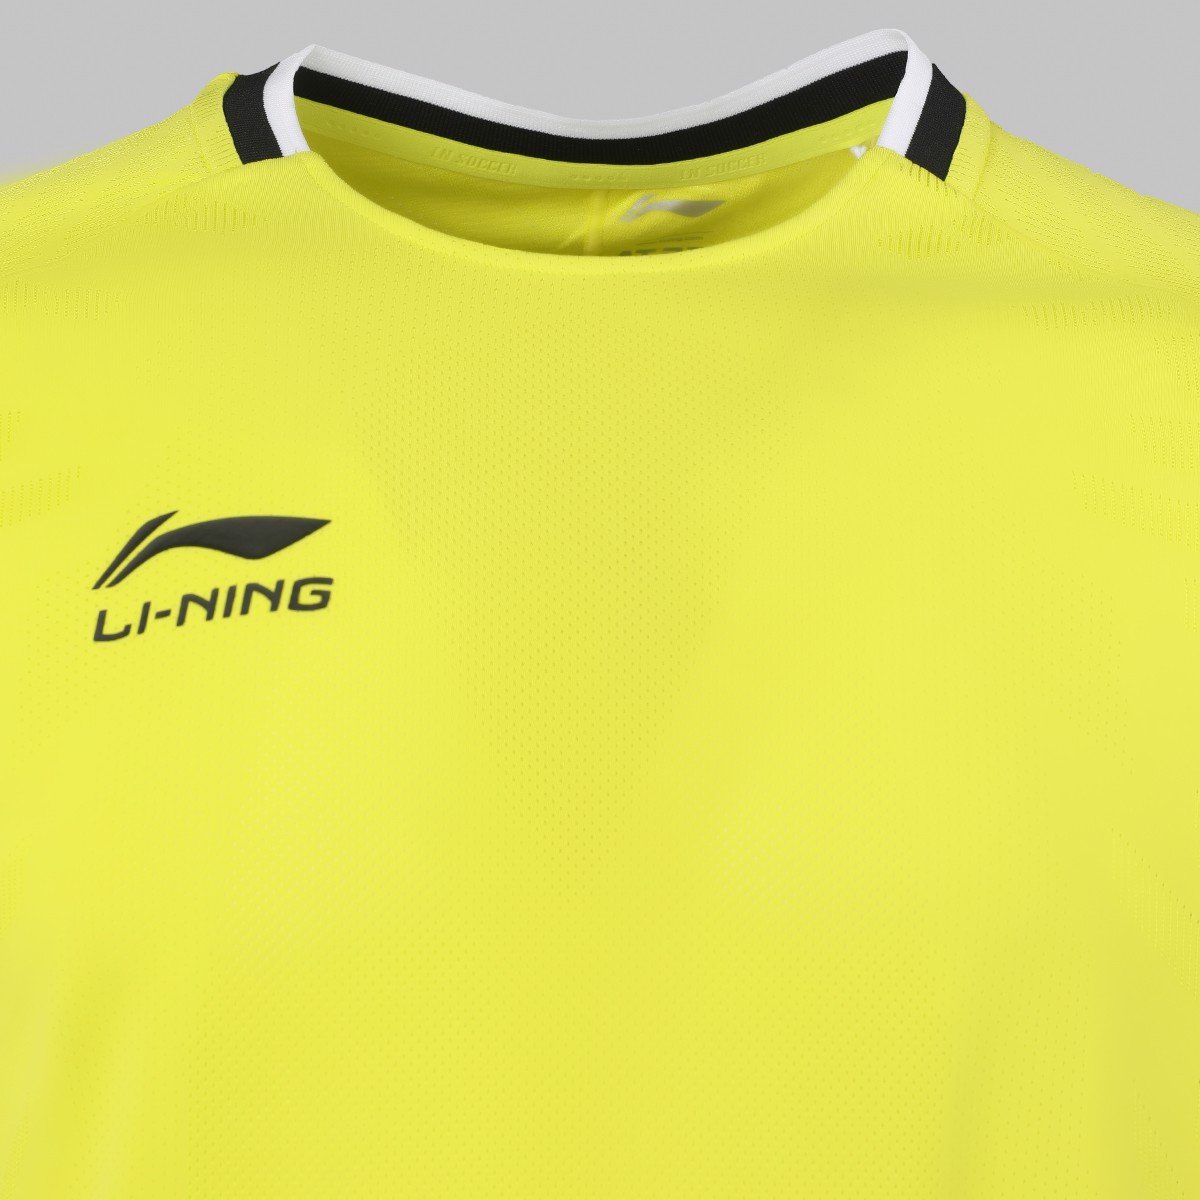 Bộ quần áo bóng đá thể thao Li-Ning nam AATS037-6